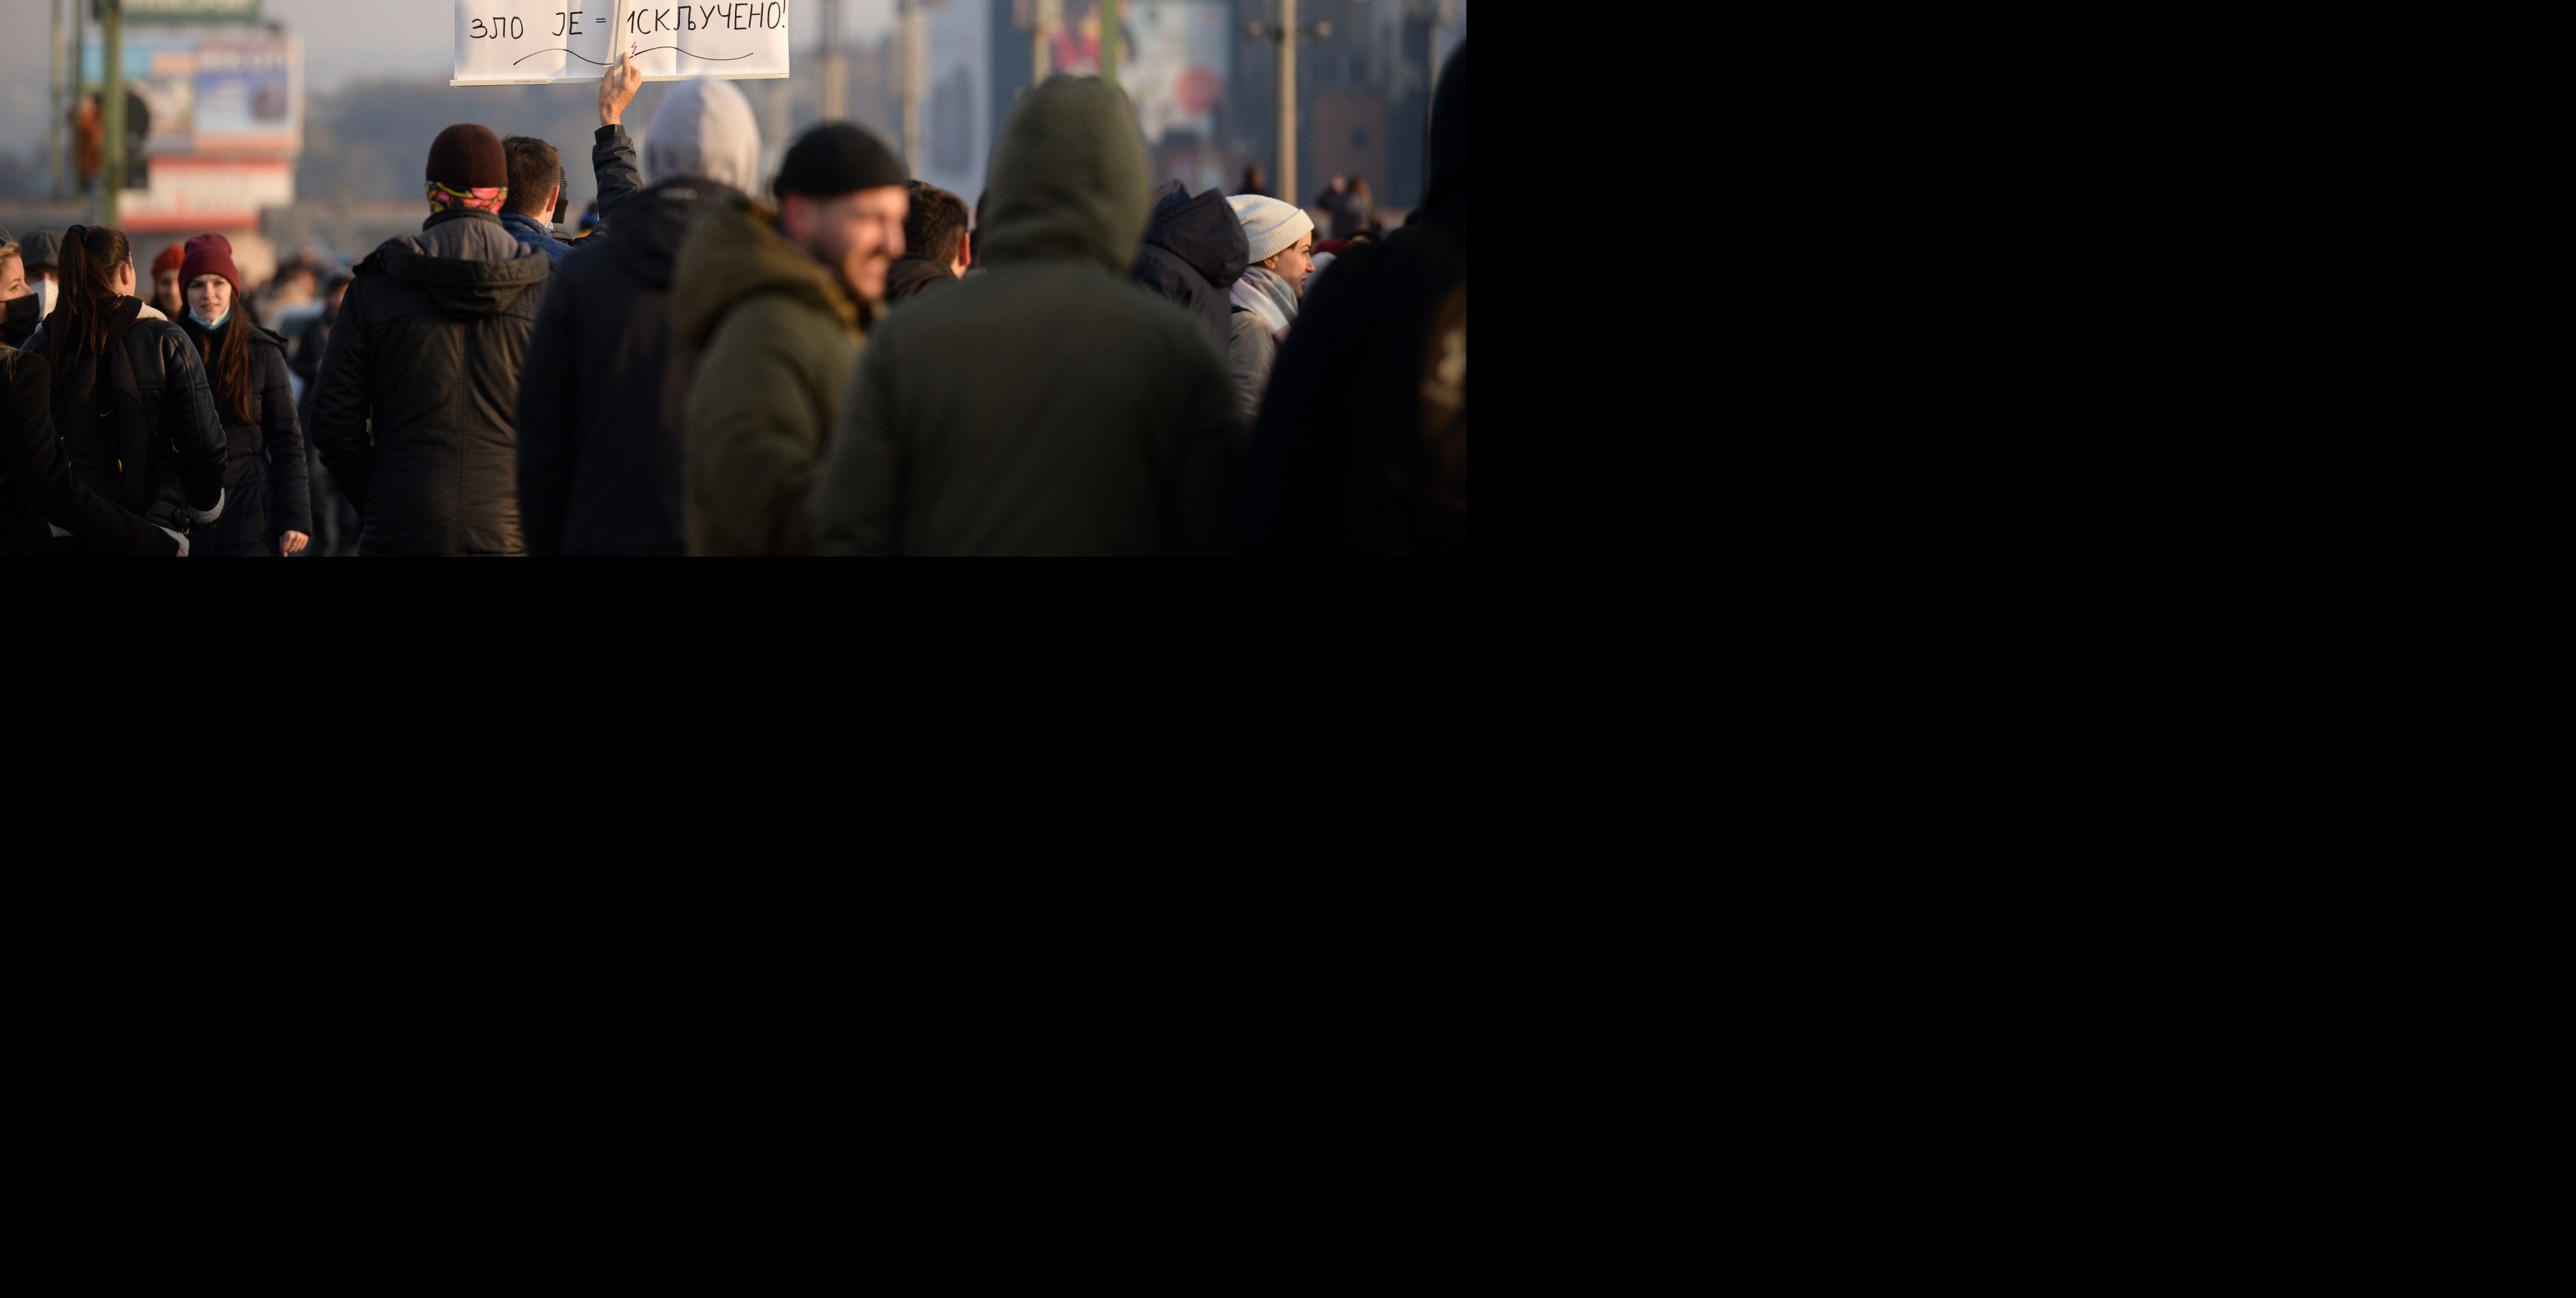 RAČUNICA JE JASNA Evo koliko je jučerašnji protest koštao Grad Beograd